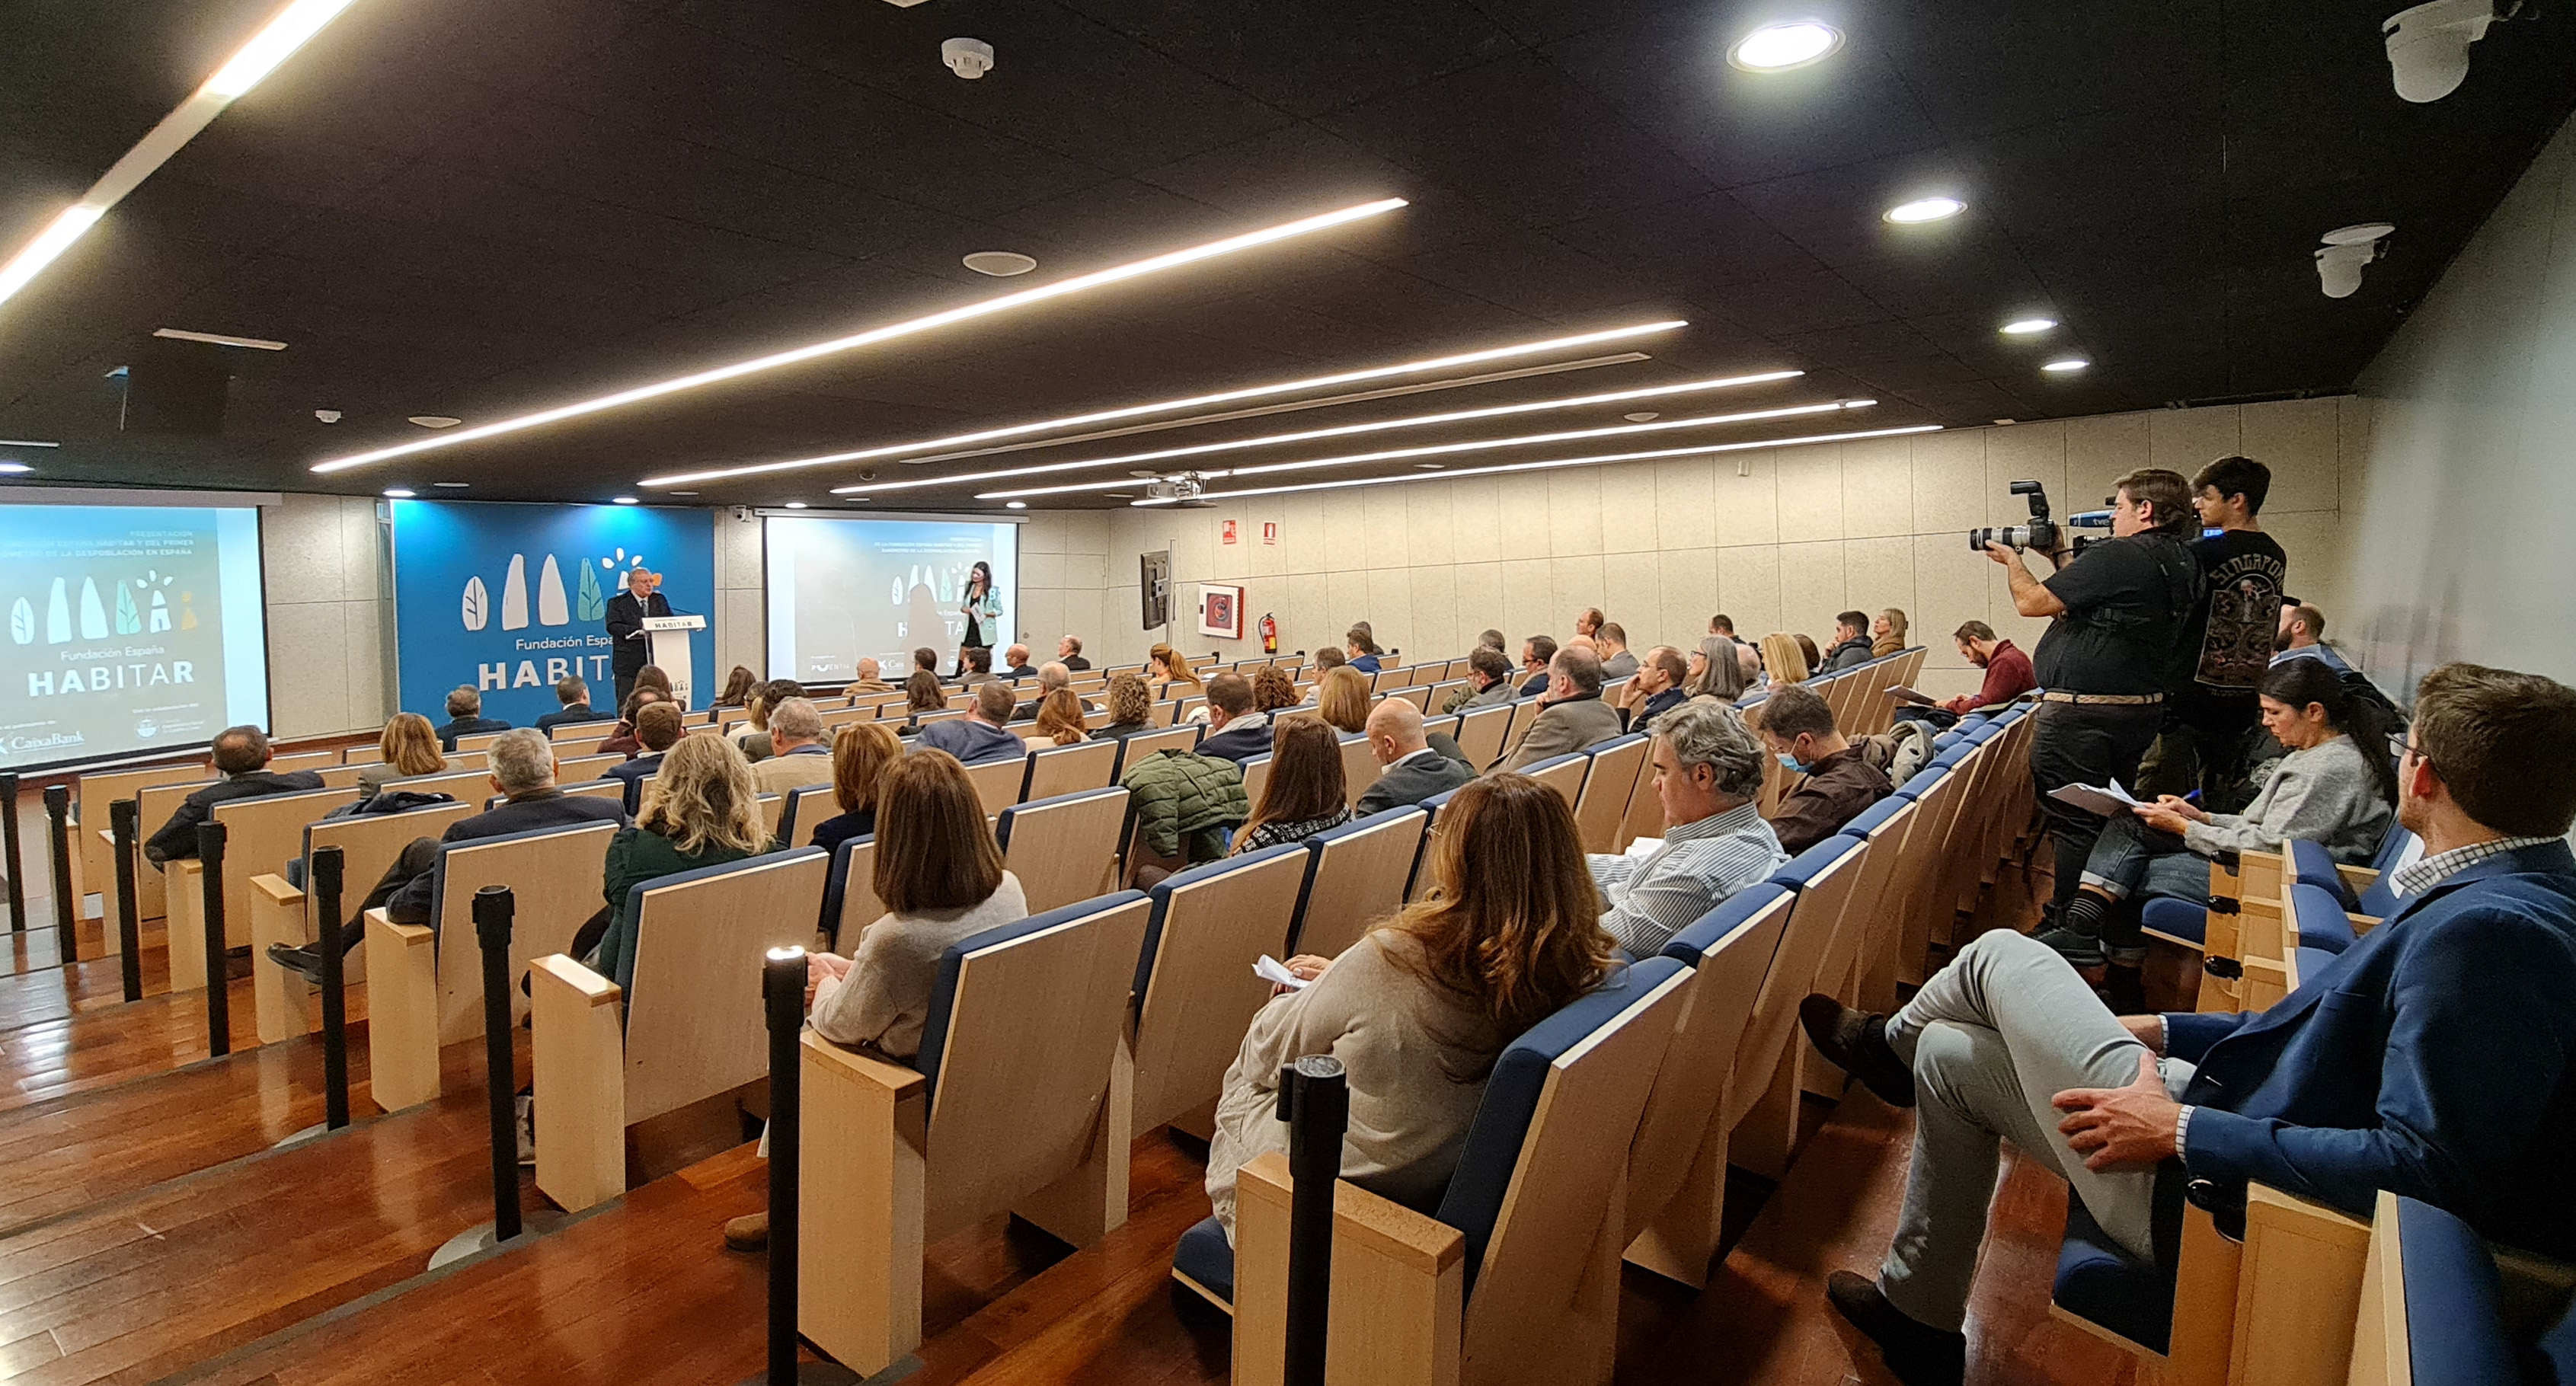 Presentación en la sede del CESCYL de la Fundación España Habitar y Barómetro despoblación